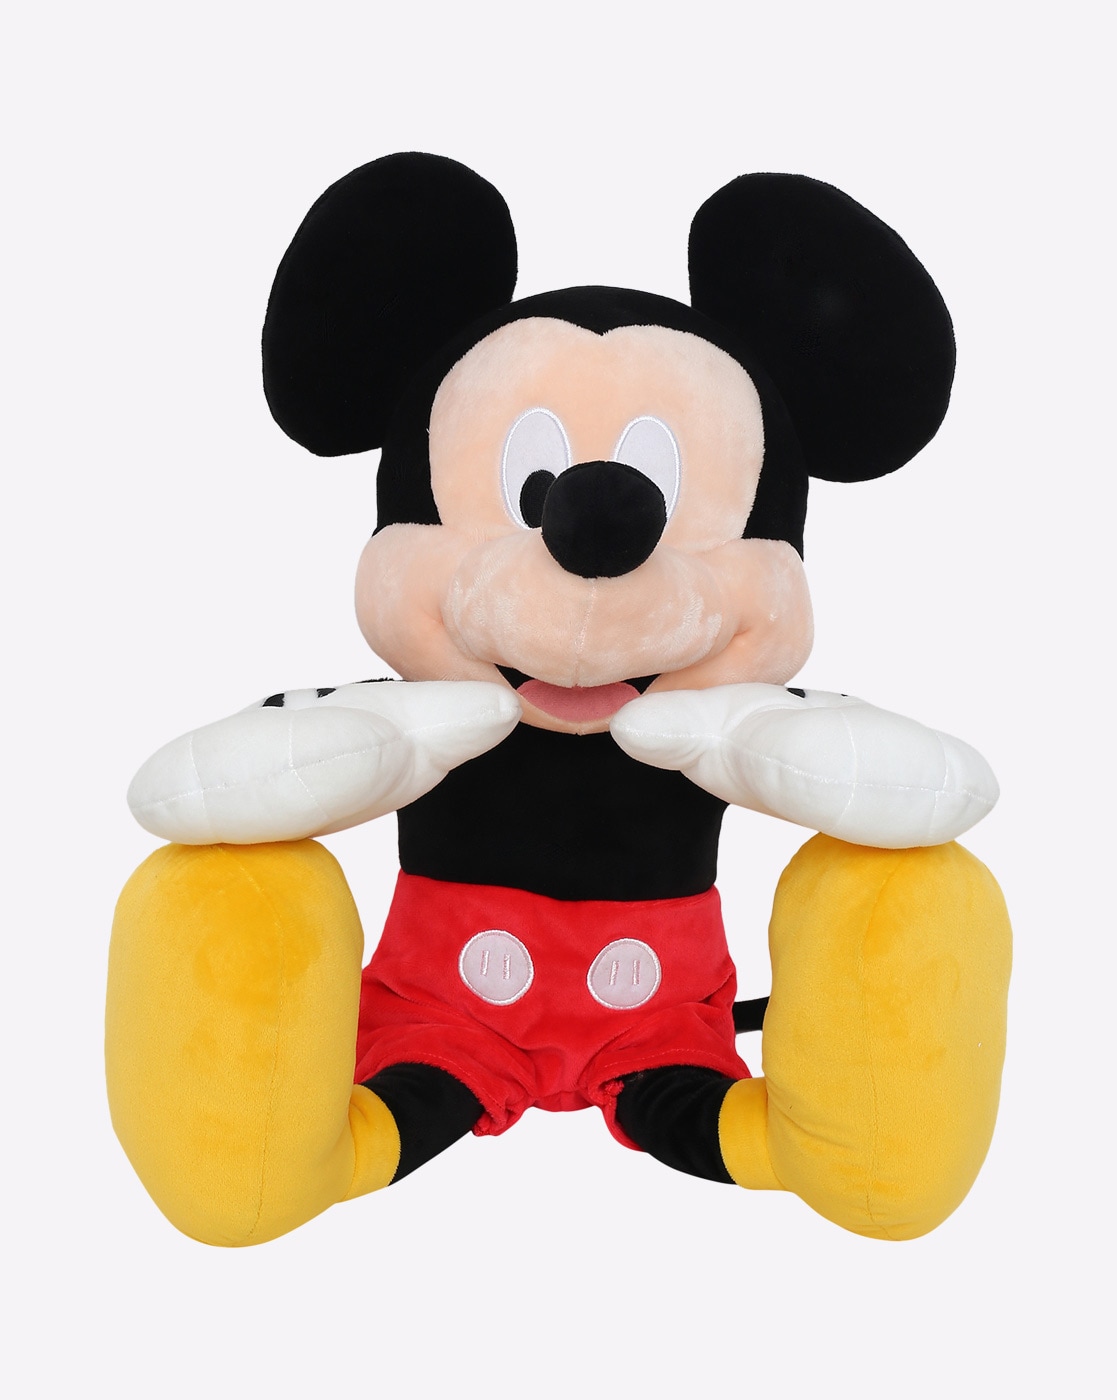 disney mickey mouse plush toy